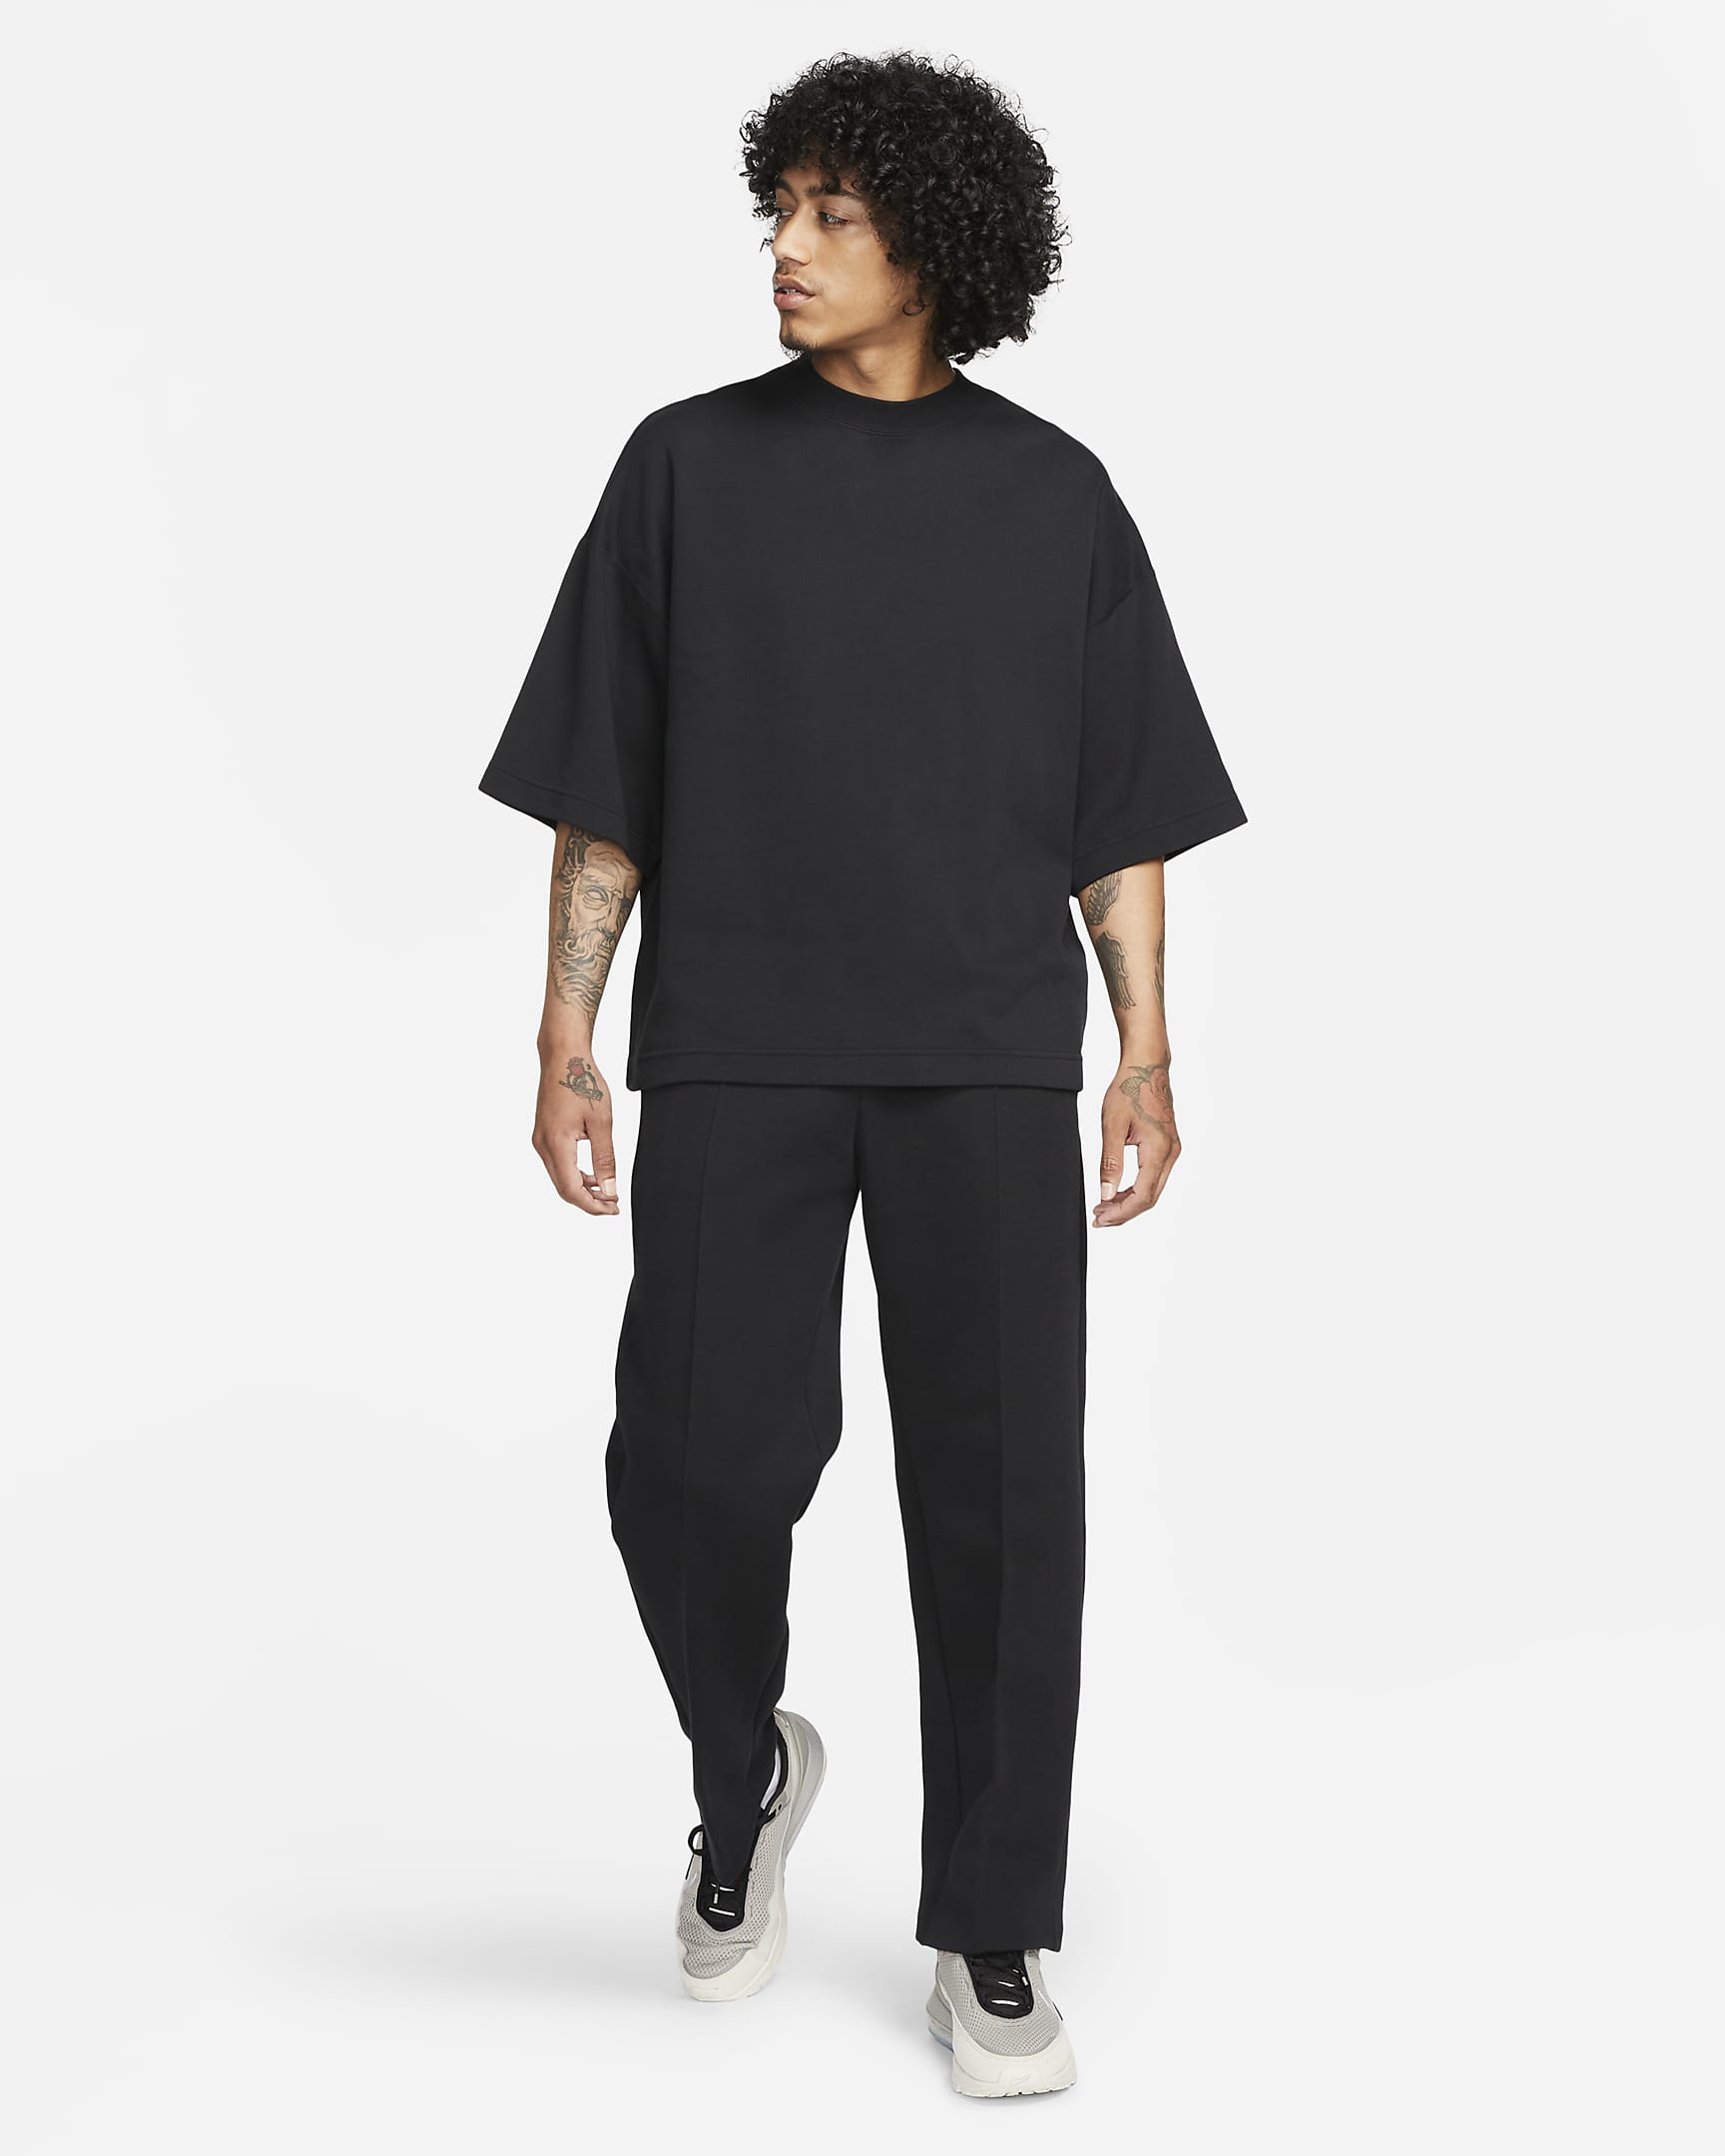 Nike Sportswear Tech Fleece Reimagined Men's Oversized Short-Sleeve ...